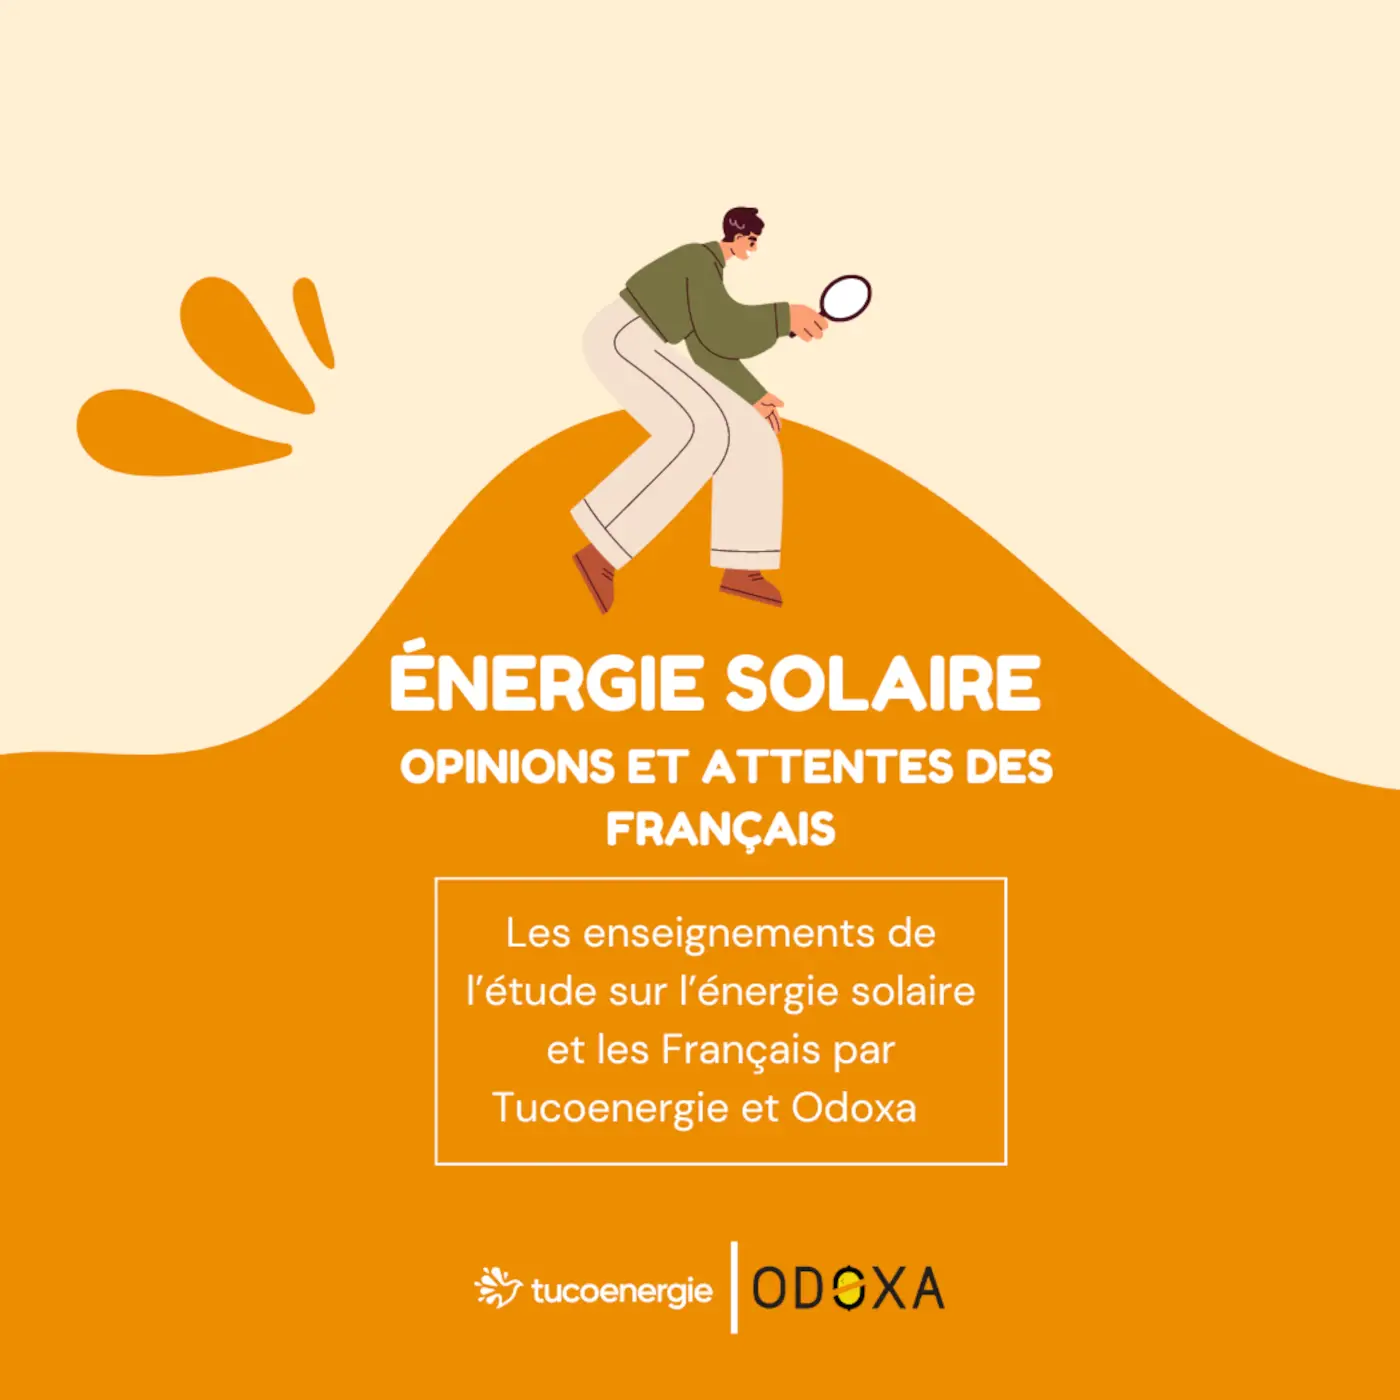 energie solaire : opinions et attentes des Français, les enseignements de l'étude sur l'énergie solaire et les Français par Tucoenergie et Odoxa